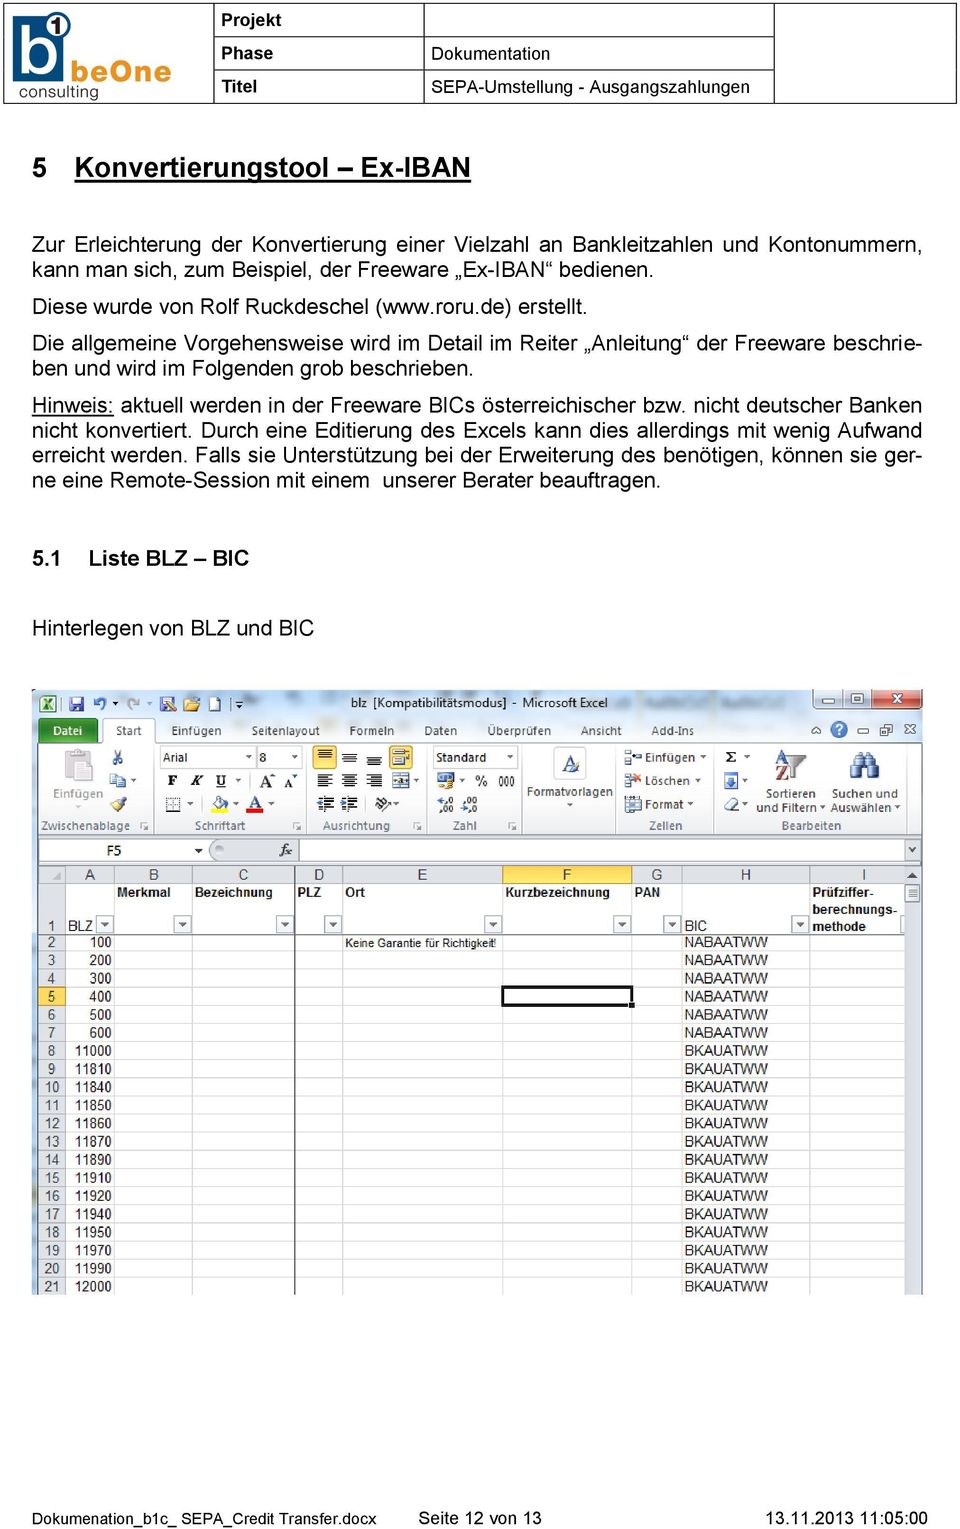 Hinweis: aktuell werden in der Freeware BICs österreichischer bzw. nicht deutscher Banken nicht konvertiert. Durch eine Editierung des Excels kann dies allerdings mit wenig Aufwand erreicht werden.